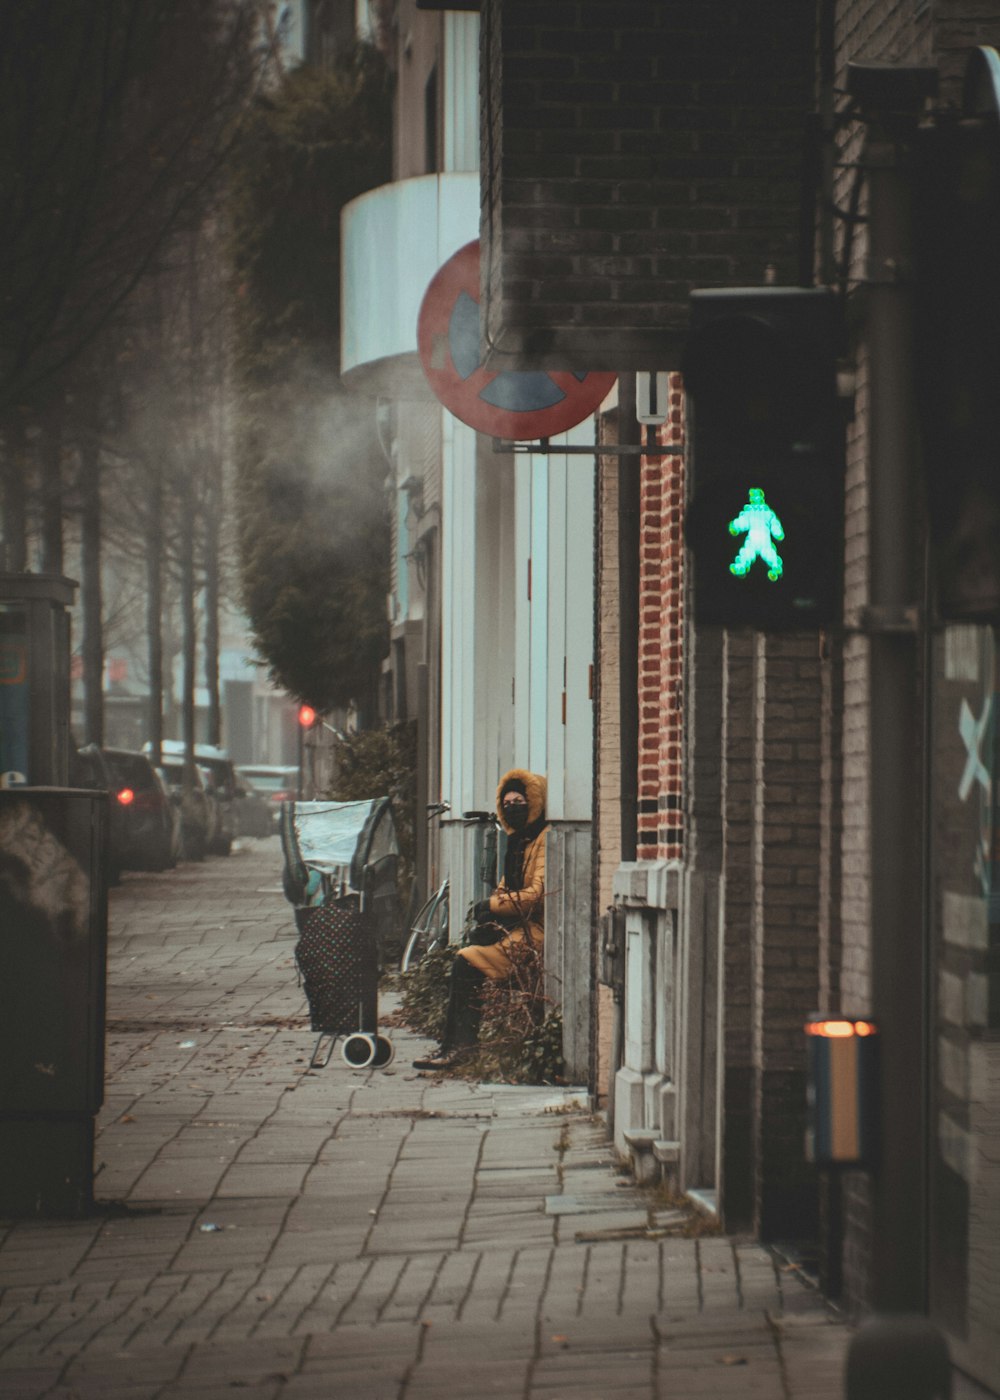 a person sitting on a chair on a sidewalk